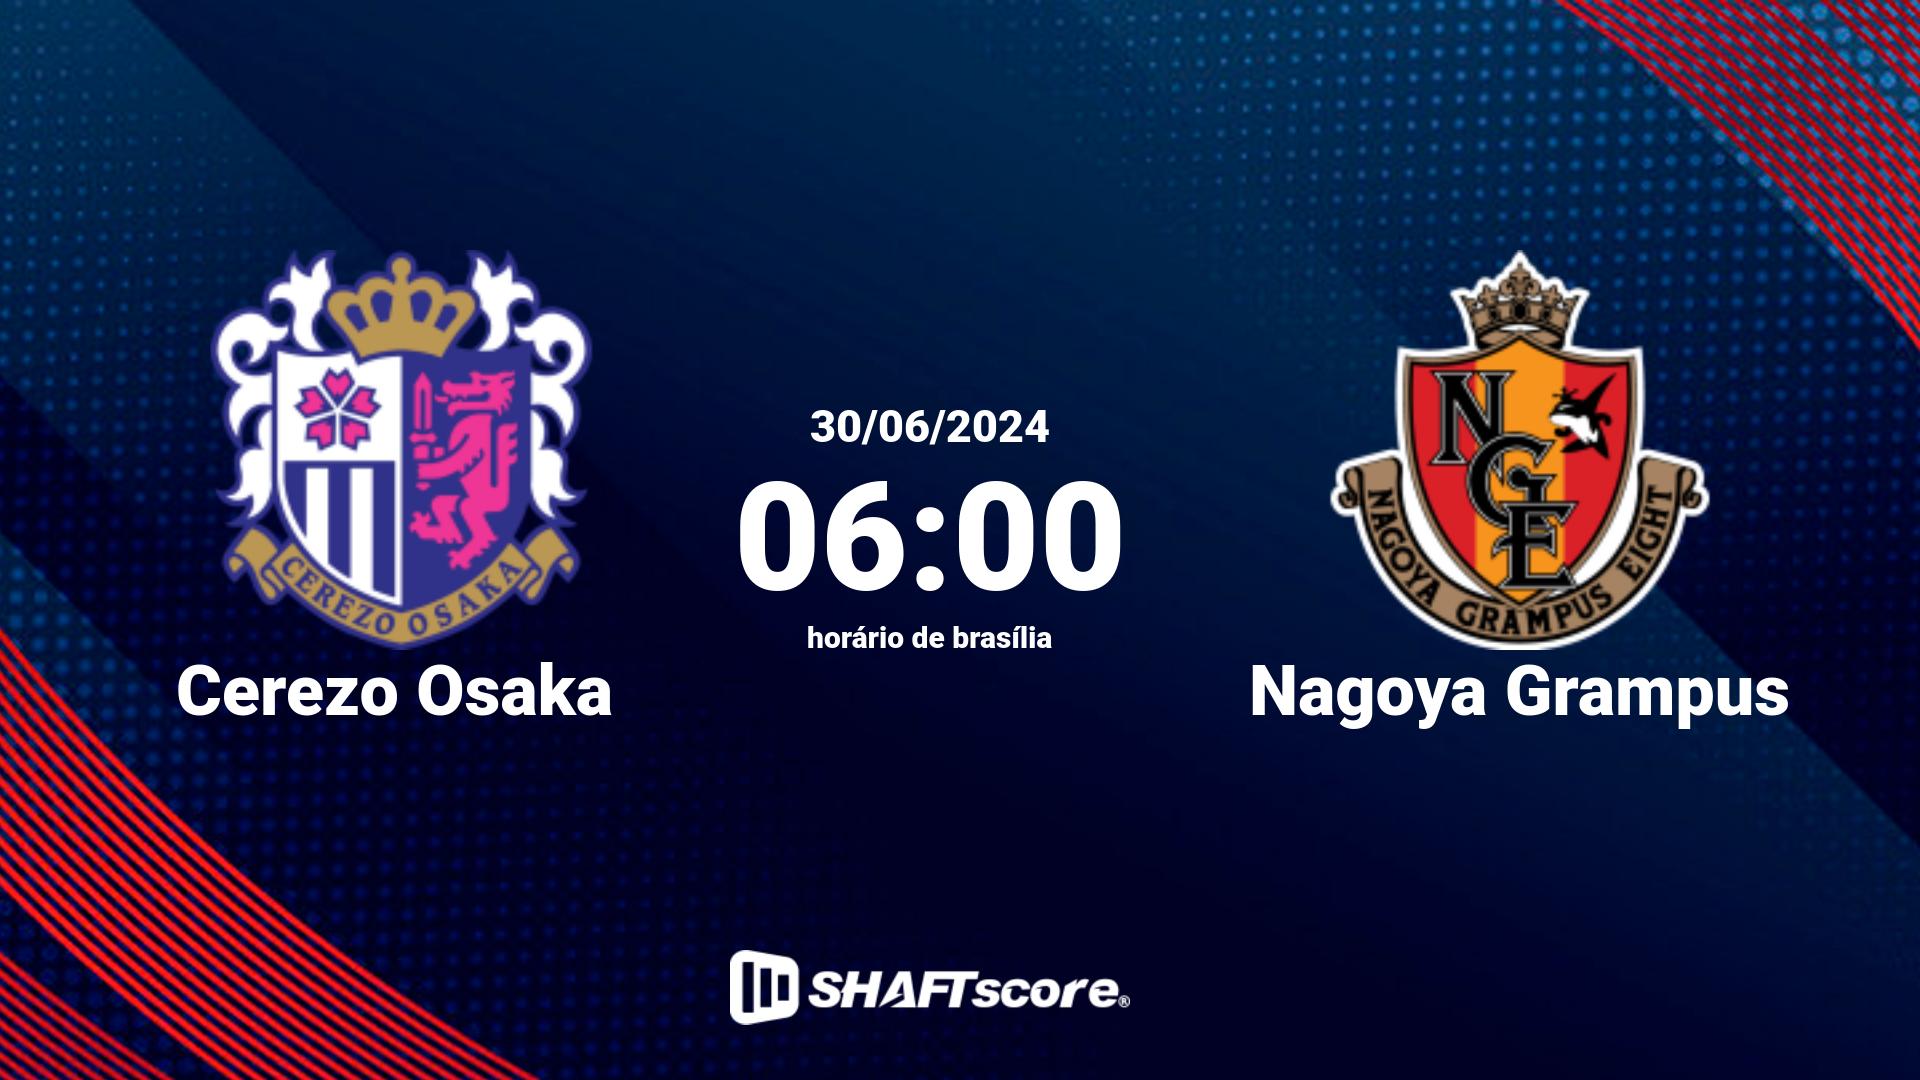 Estatísticas do jogo Cerezo Osaka vs Nagoya Grampus 30.06 06:00